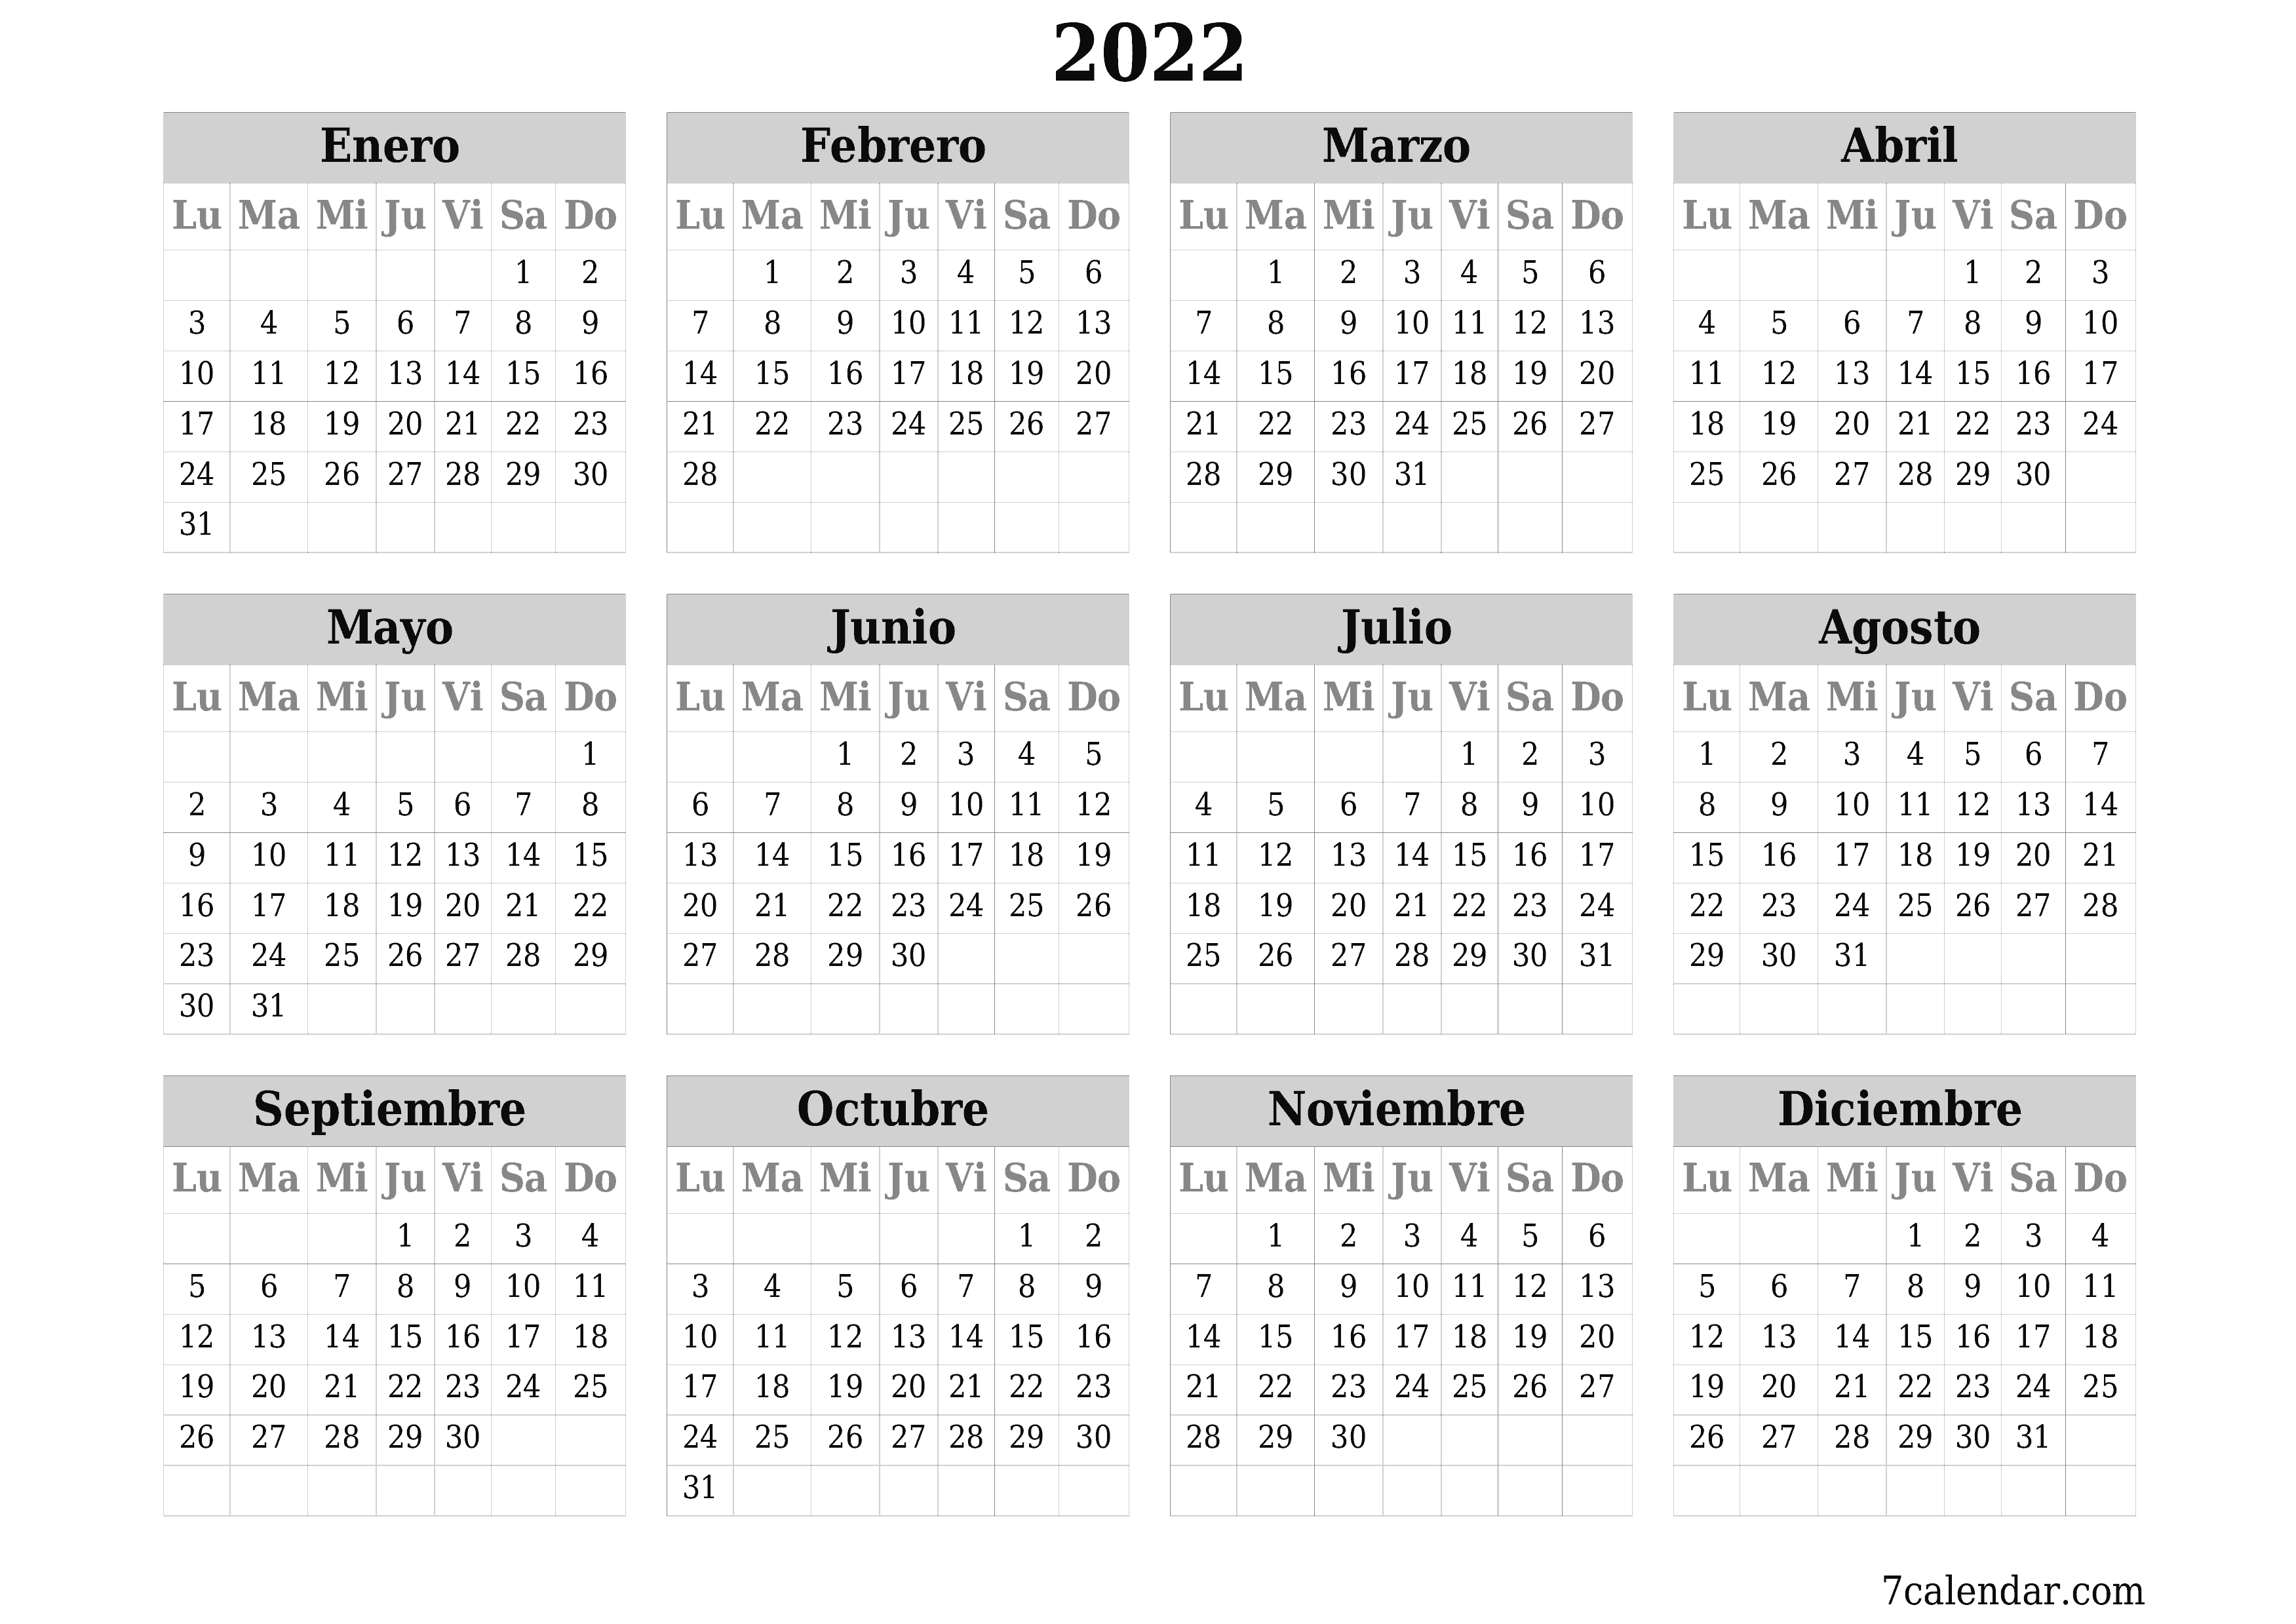 Calendario anual en blanco para el año 2022 guardar e imprimir en PDF PNG Spanish - 7calendar.com